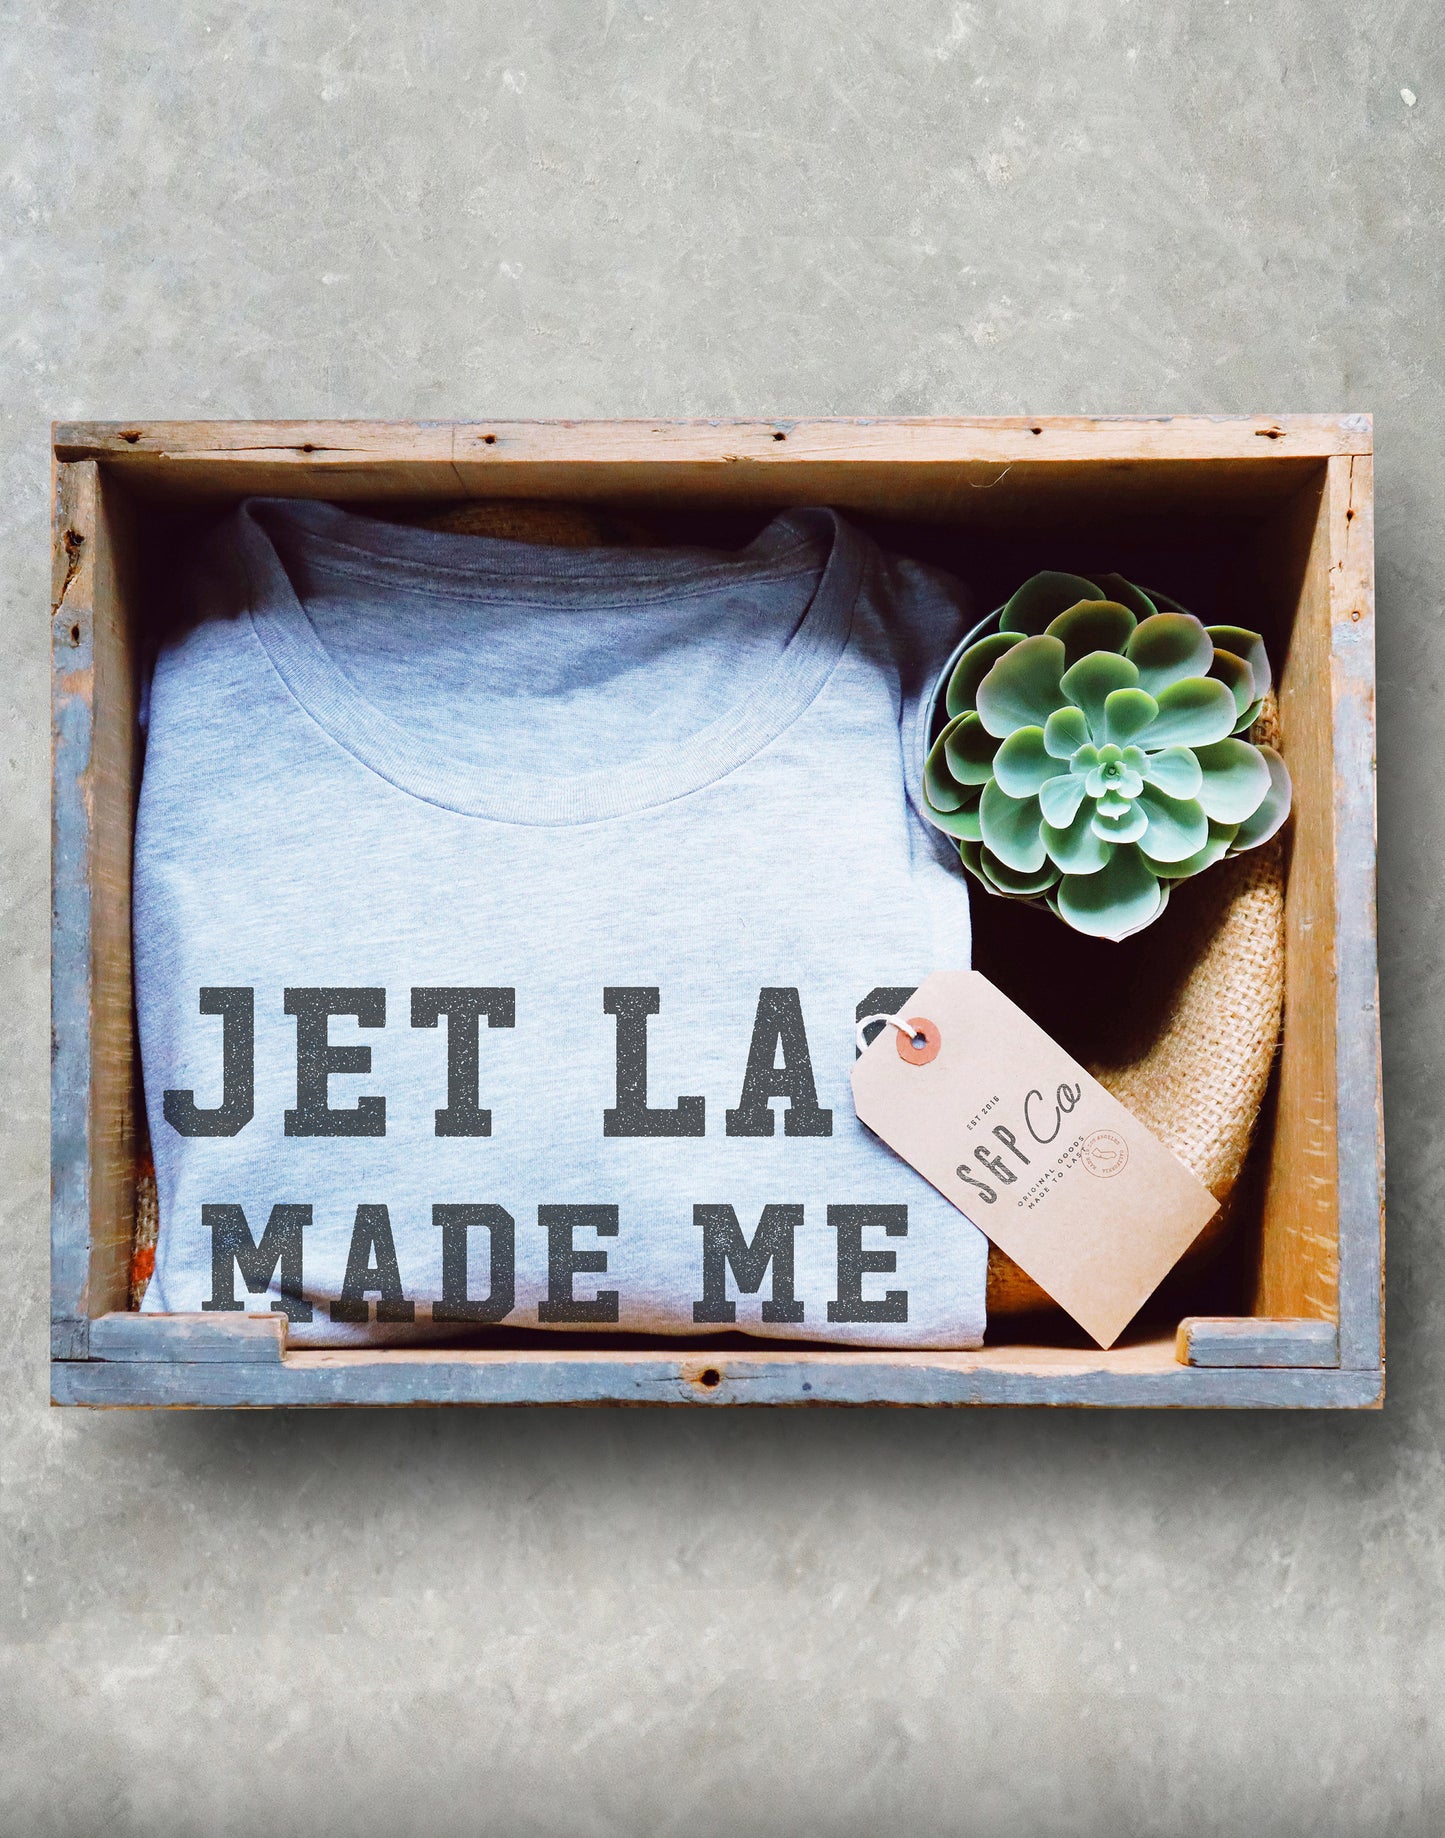 Jet Lag Made Me Do It Unisex Shirt - Backpacking Shirt, Adventure Shirt, Travel Shirt, World Traveler Shirt, Wanderlust Shirt, Air Hostess